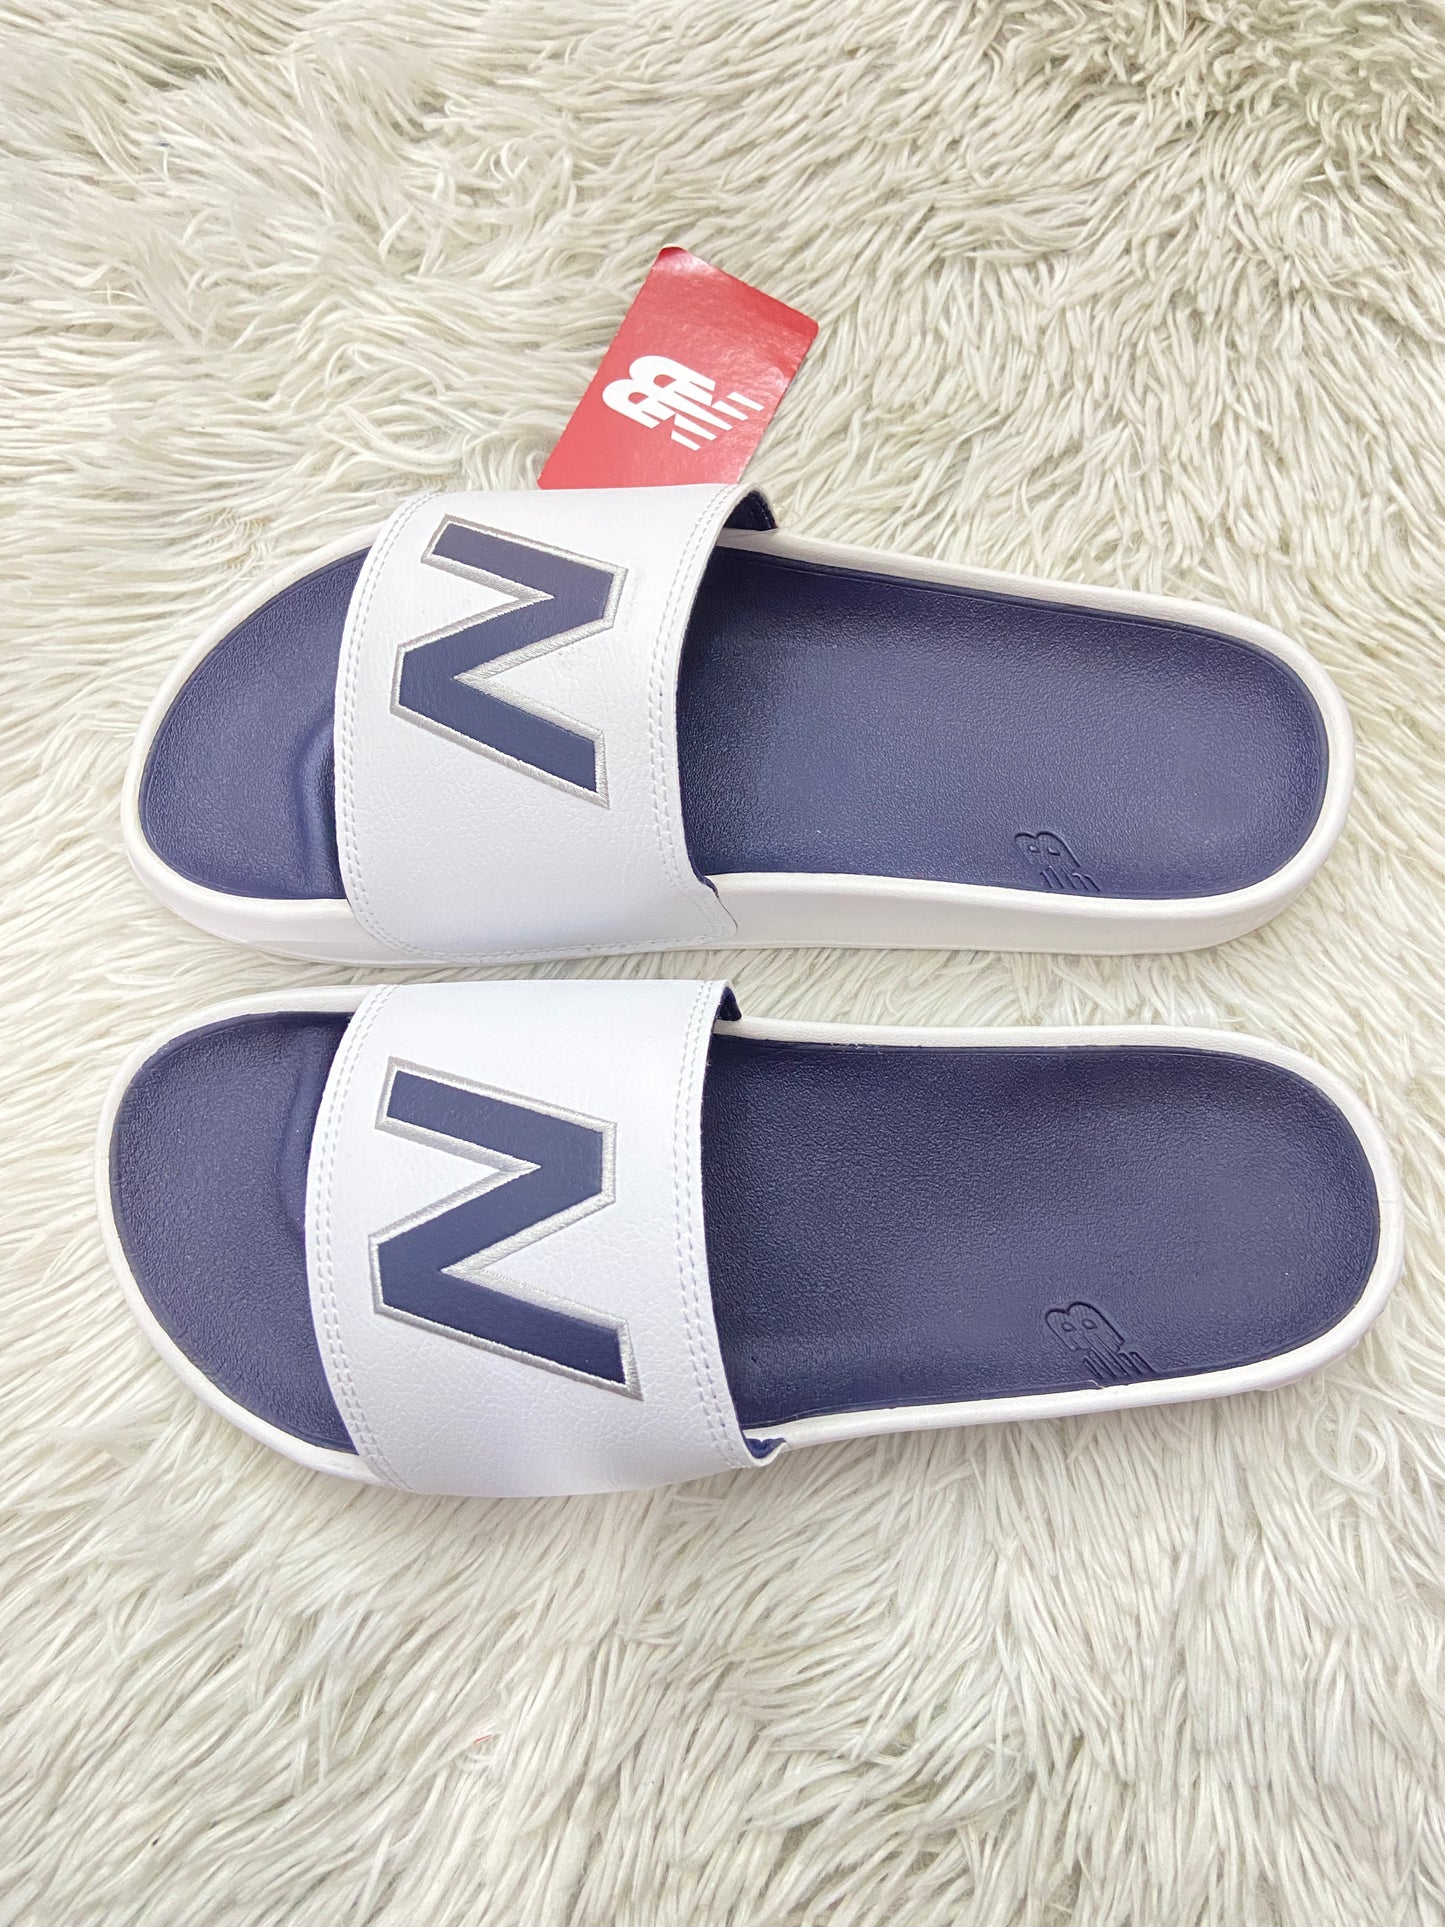 Sandalias NEW BALANCE original azul marino con blanco y letras N.